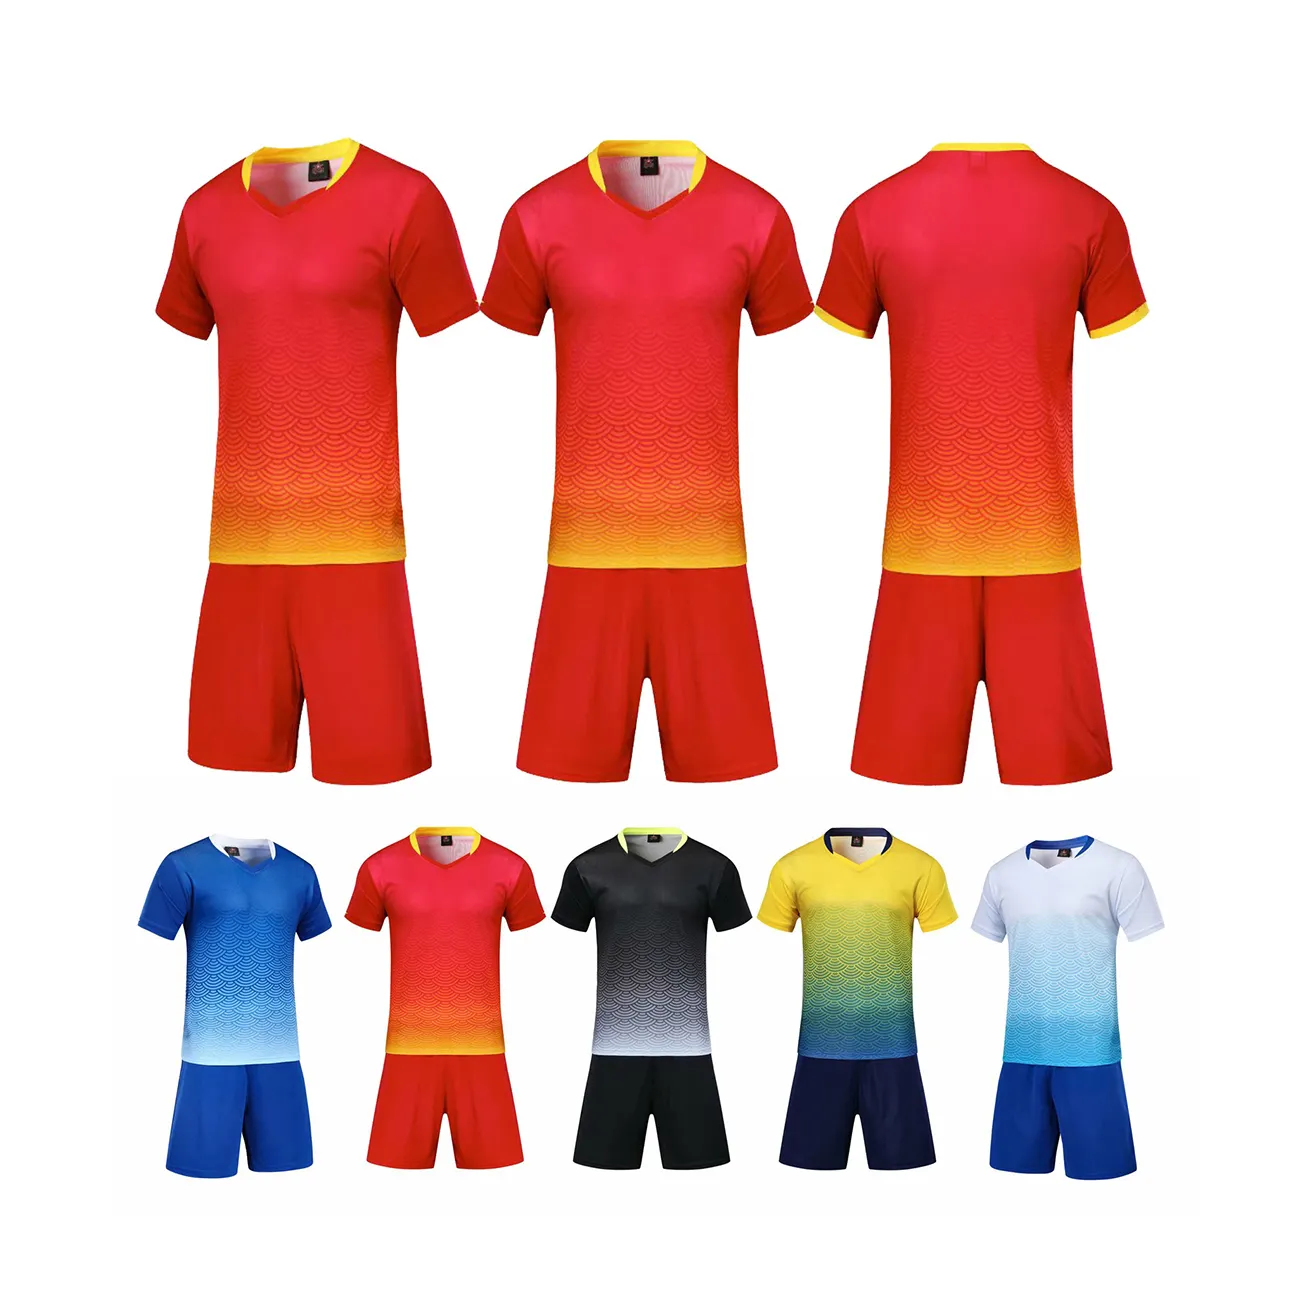 Customizable Diversiform Men Boy Play Goalkeeper Shirt Uniforms Soccer Jersey Set